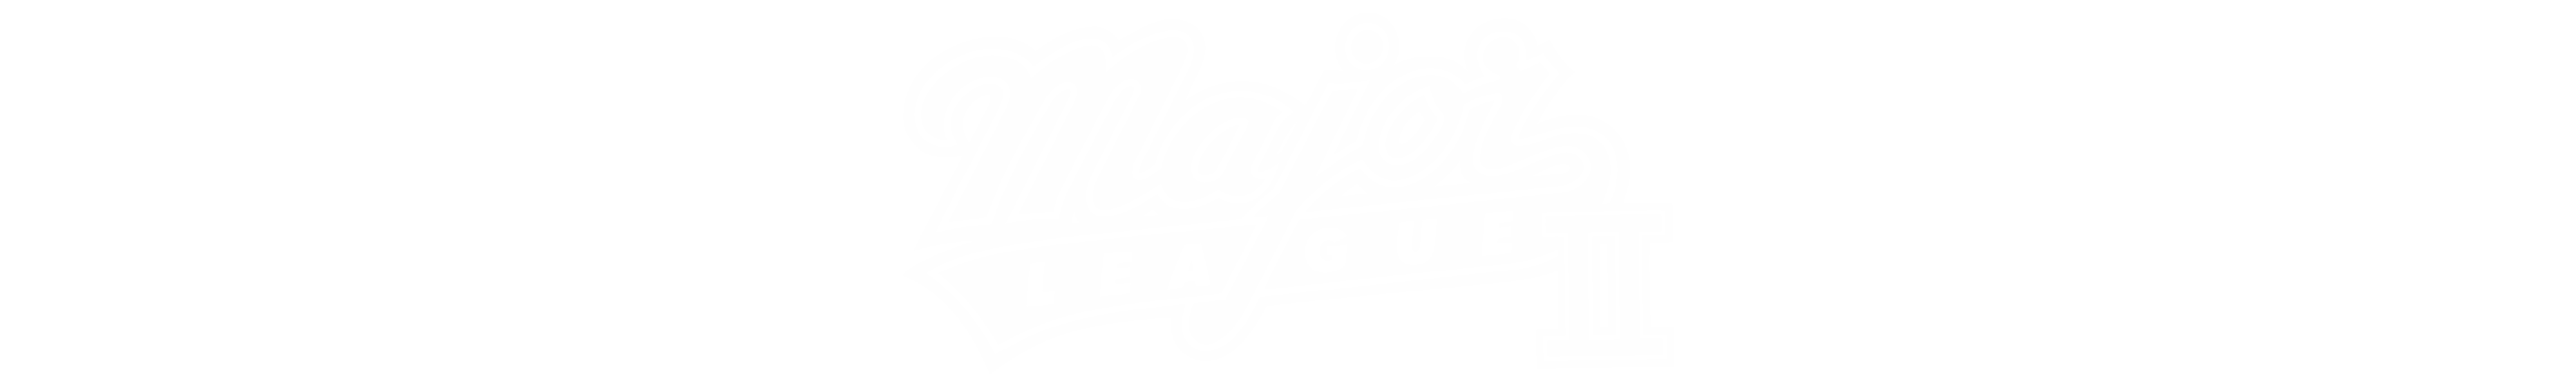 Major League II